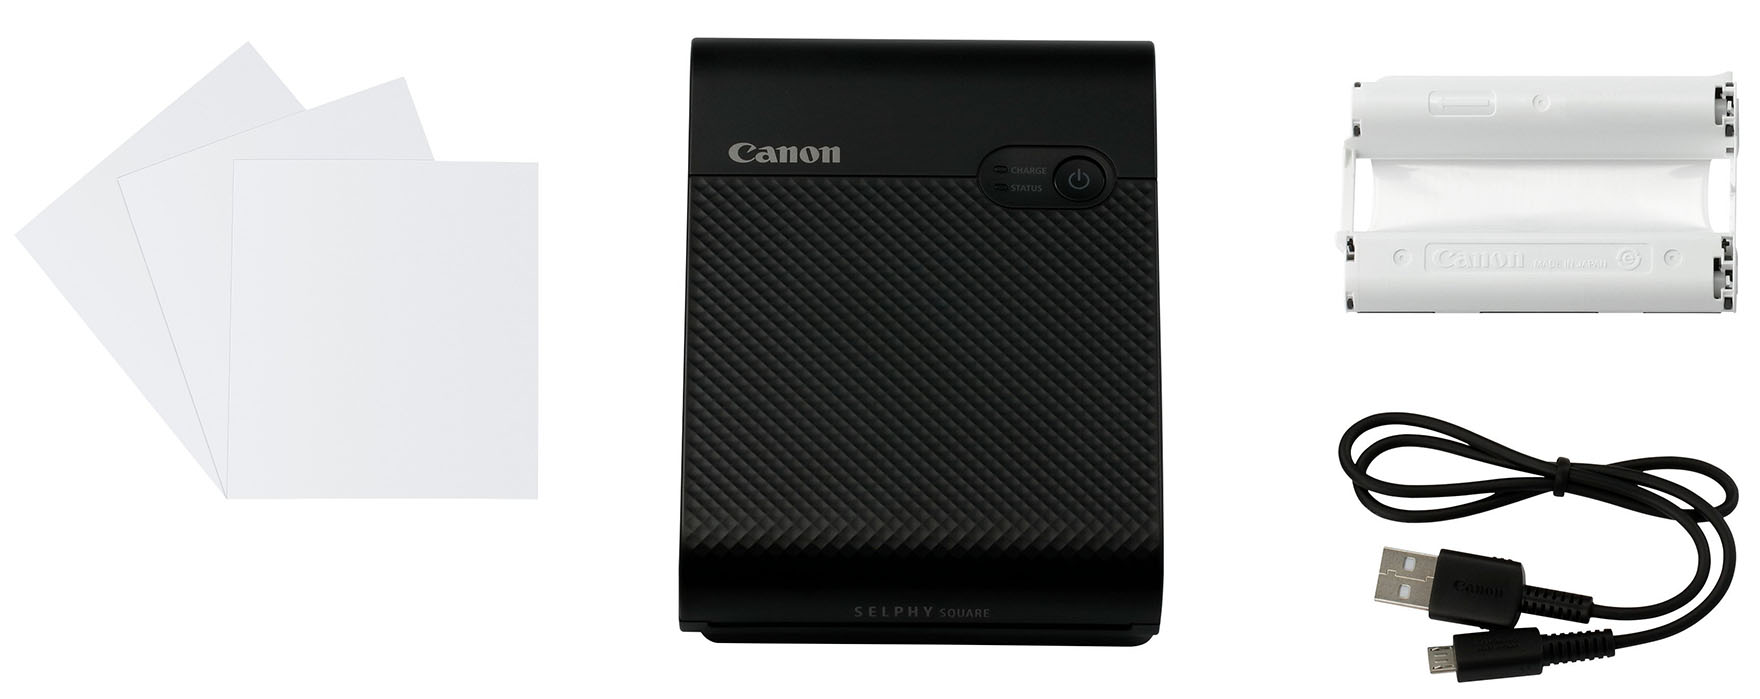 Canon Selphy Square QX10: Mobiler Drucker für quadratische Sticker -  fotointern.ch – Tagesaktuelle Fotonews